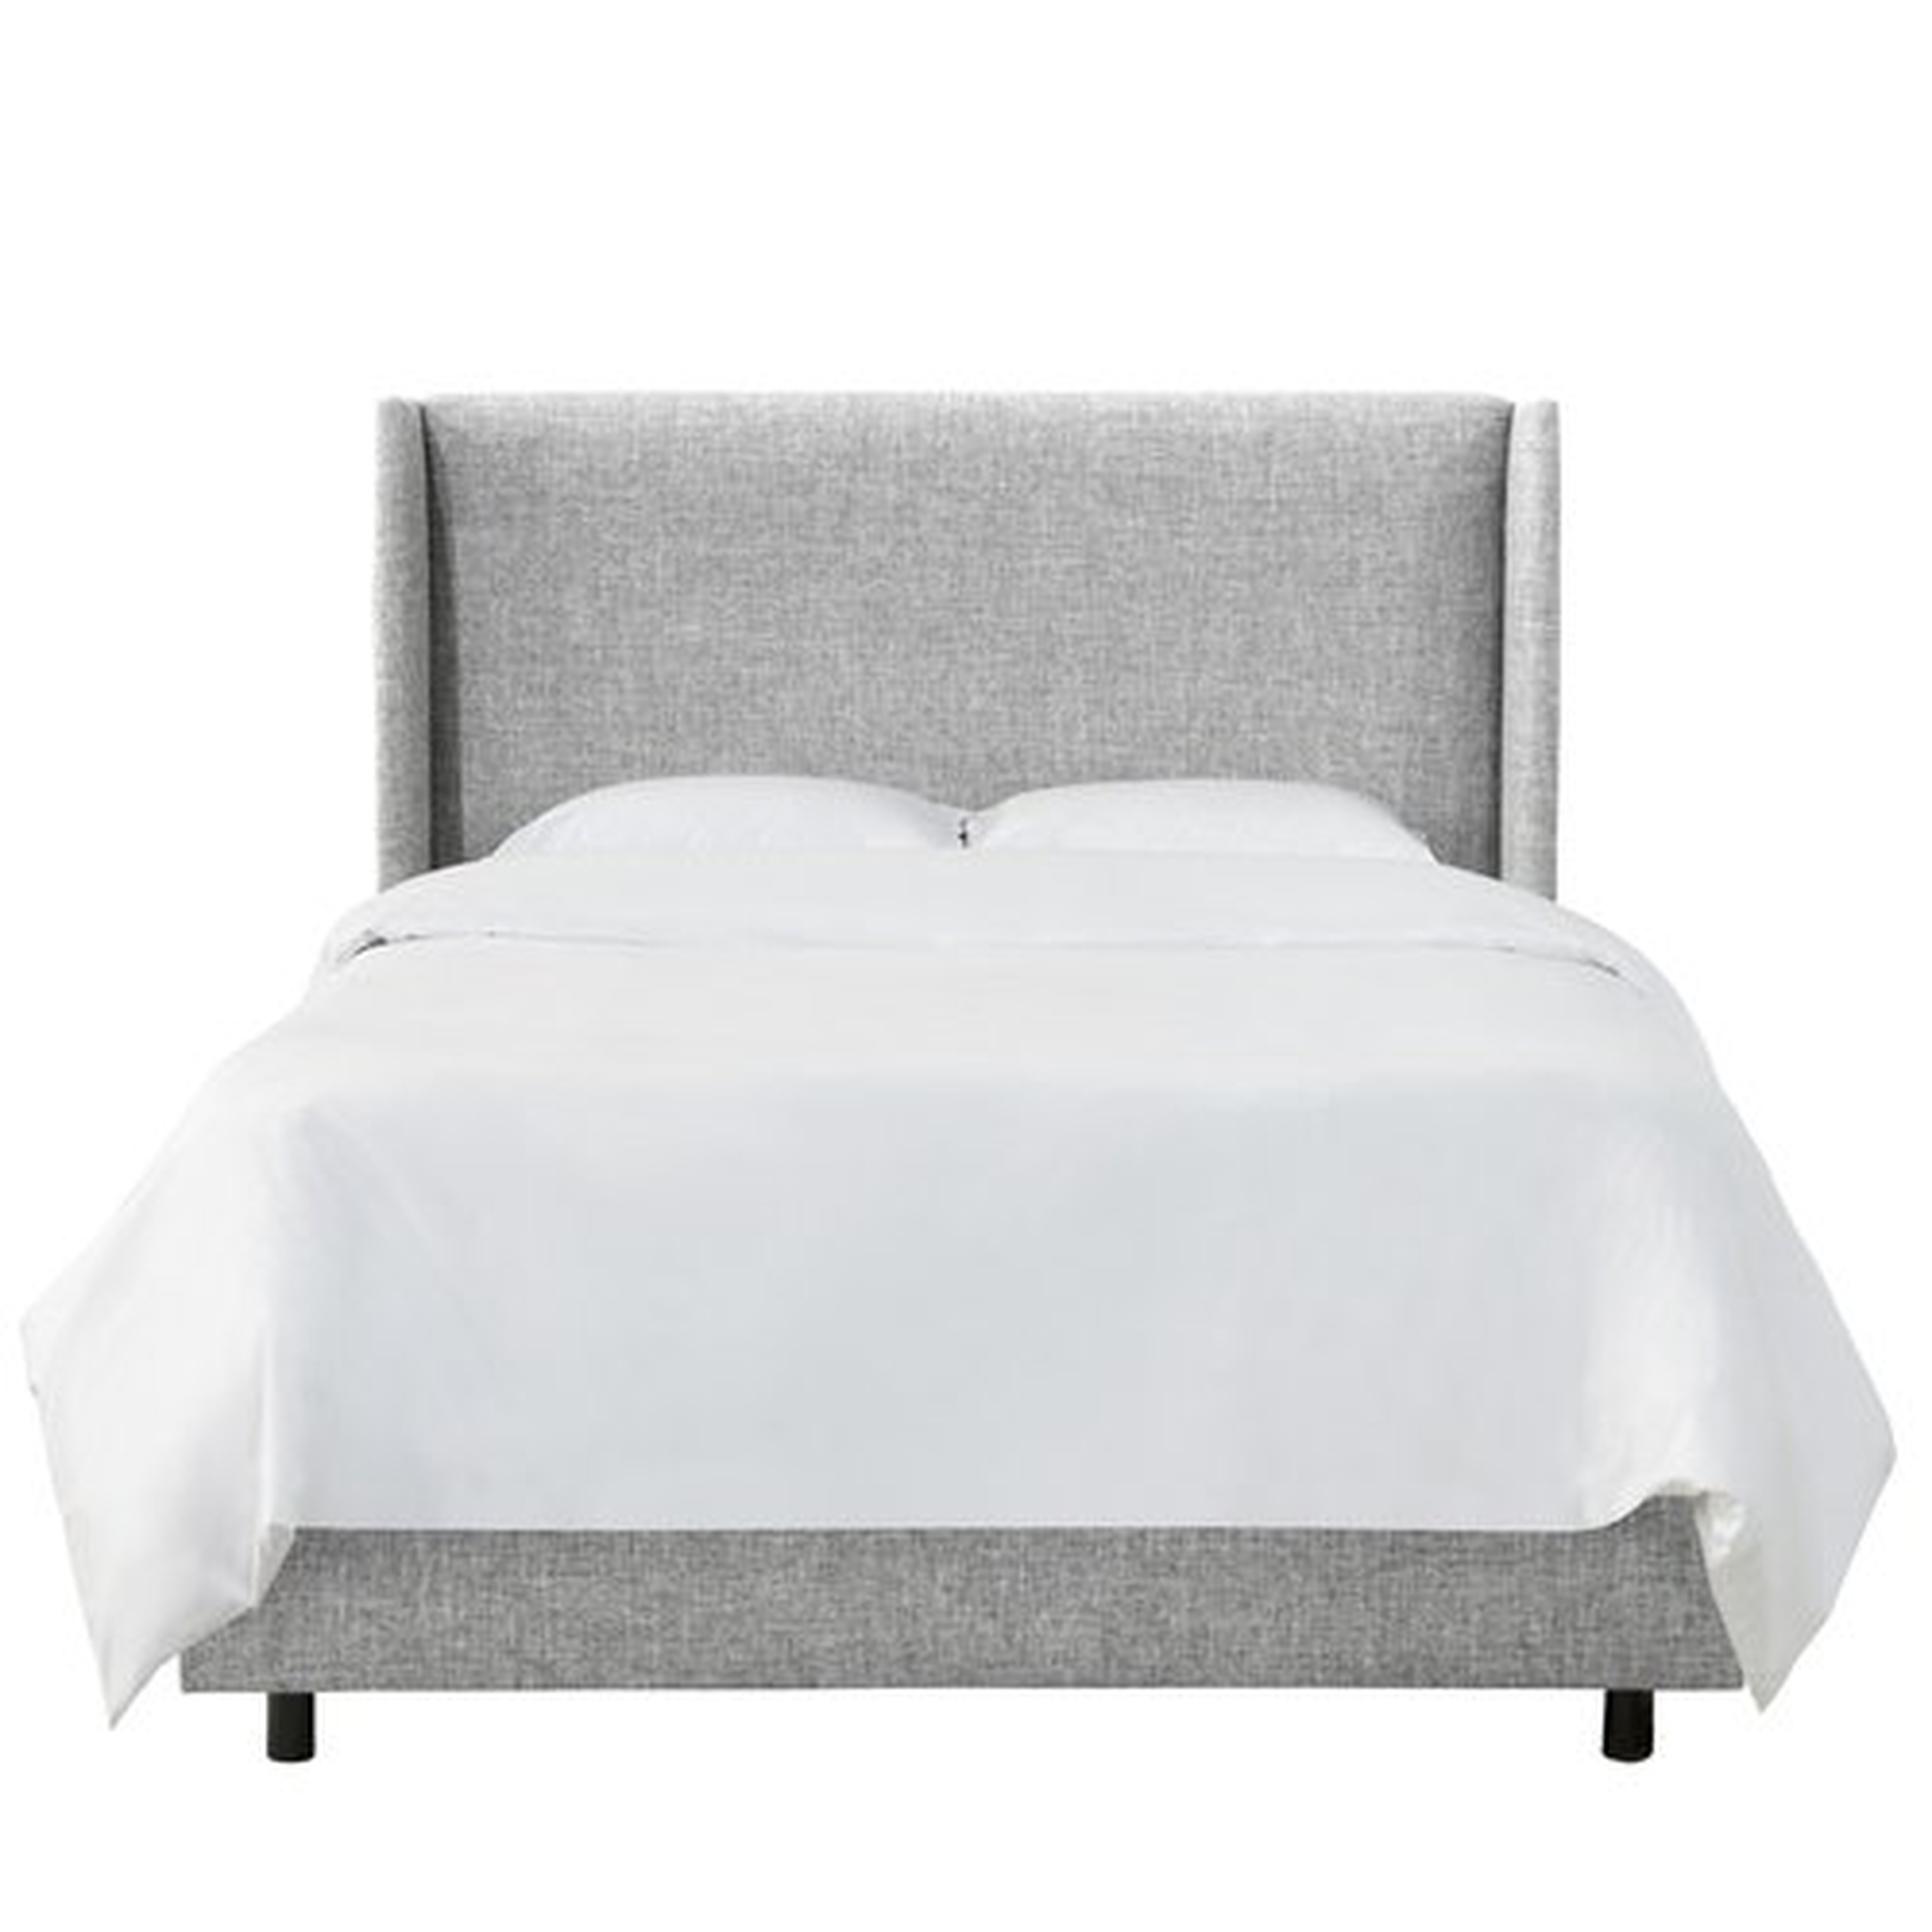 Queen Zuma Pumice Alrai Upholstered Standard Bed - Wayfair